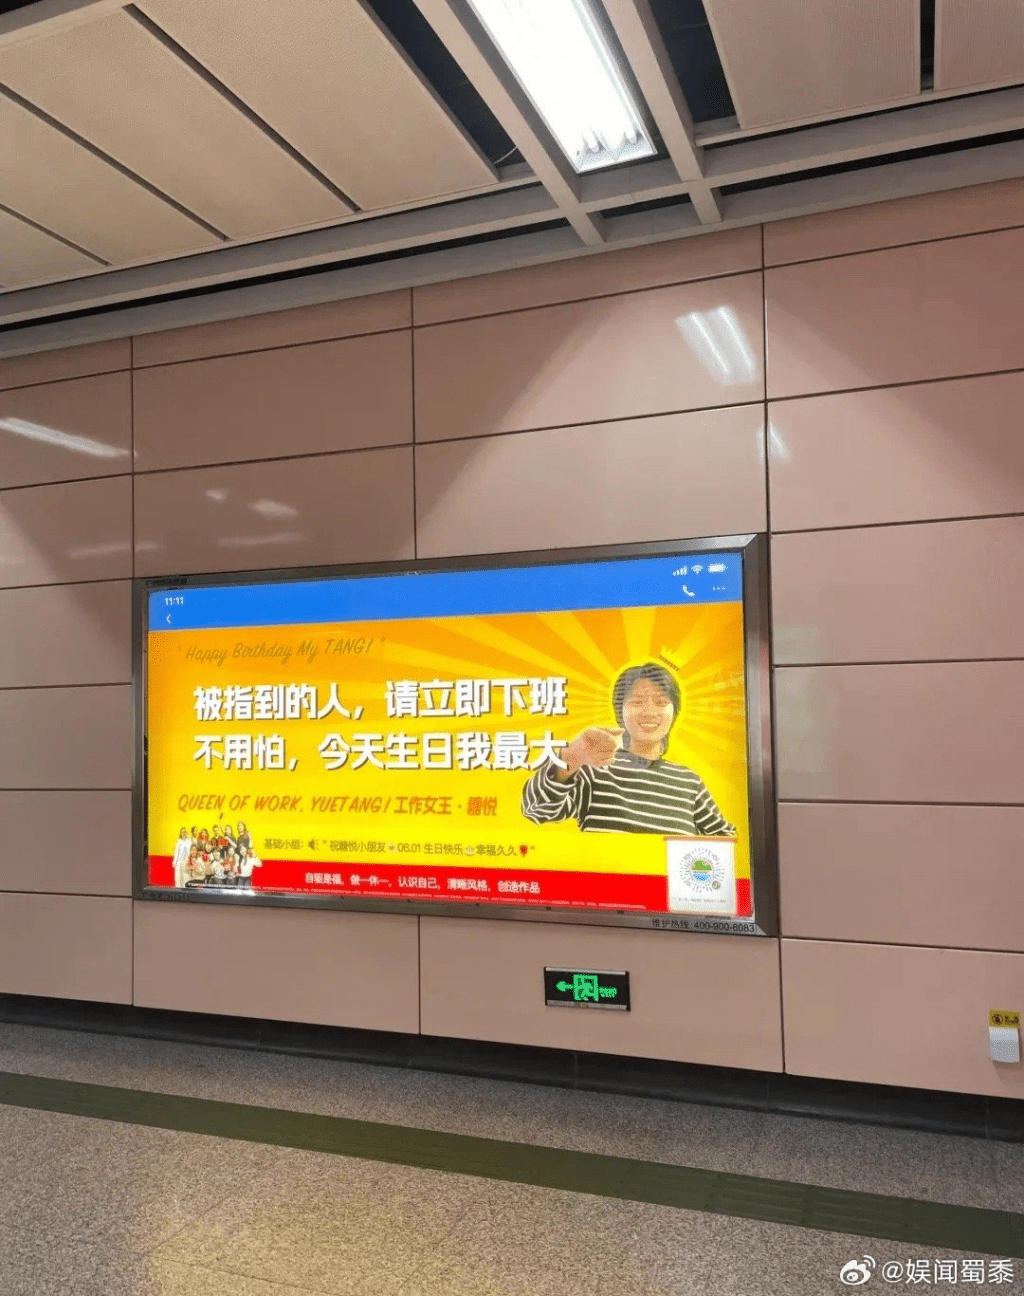 祝贺生日的广告也出现在地铁广告牌上。